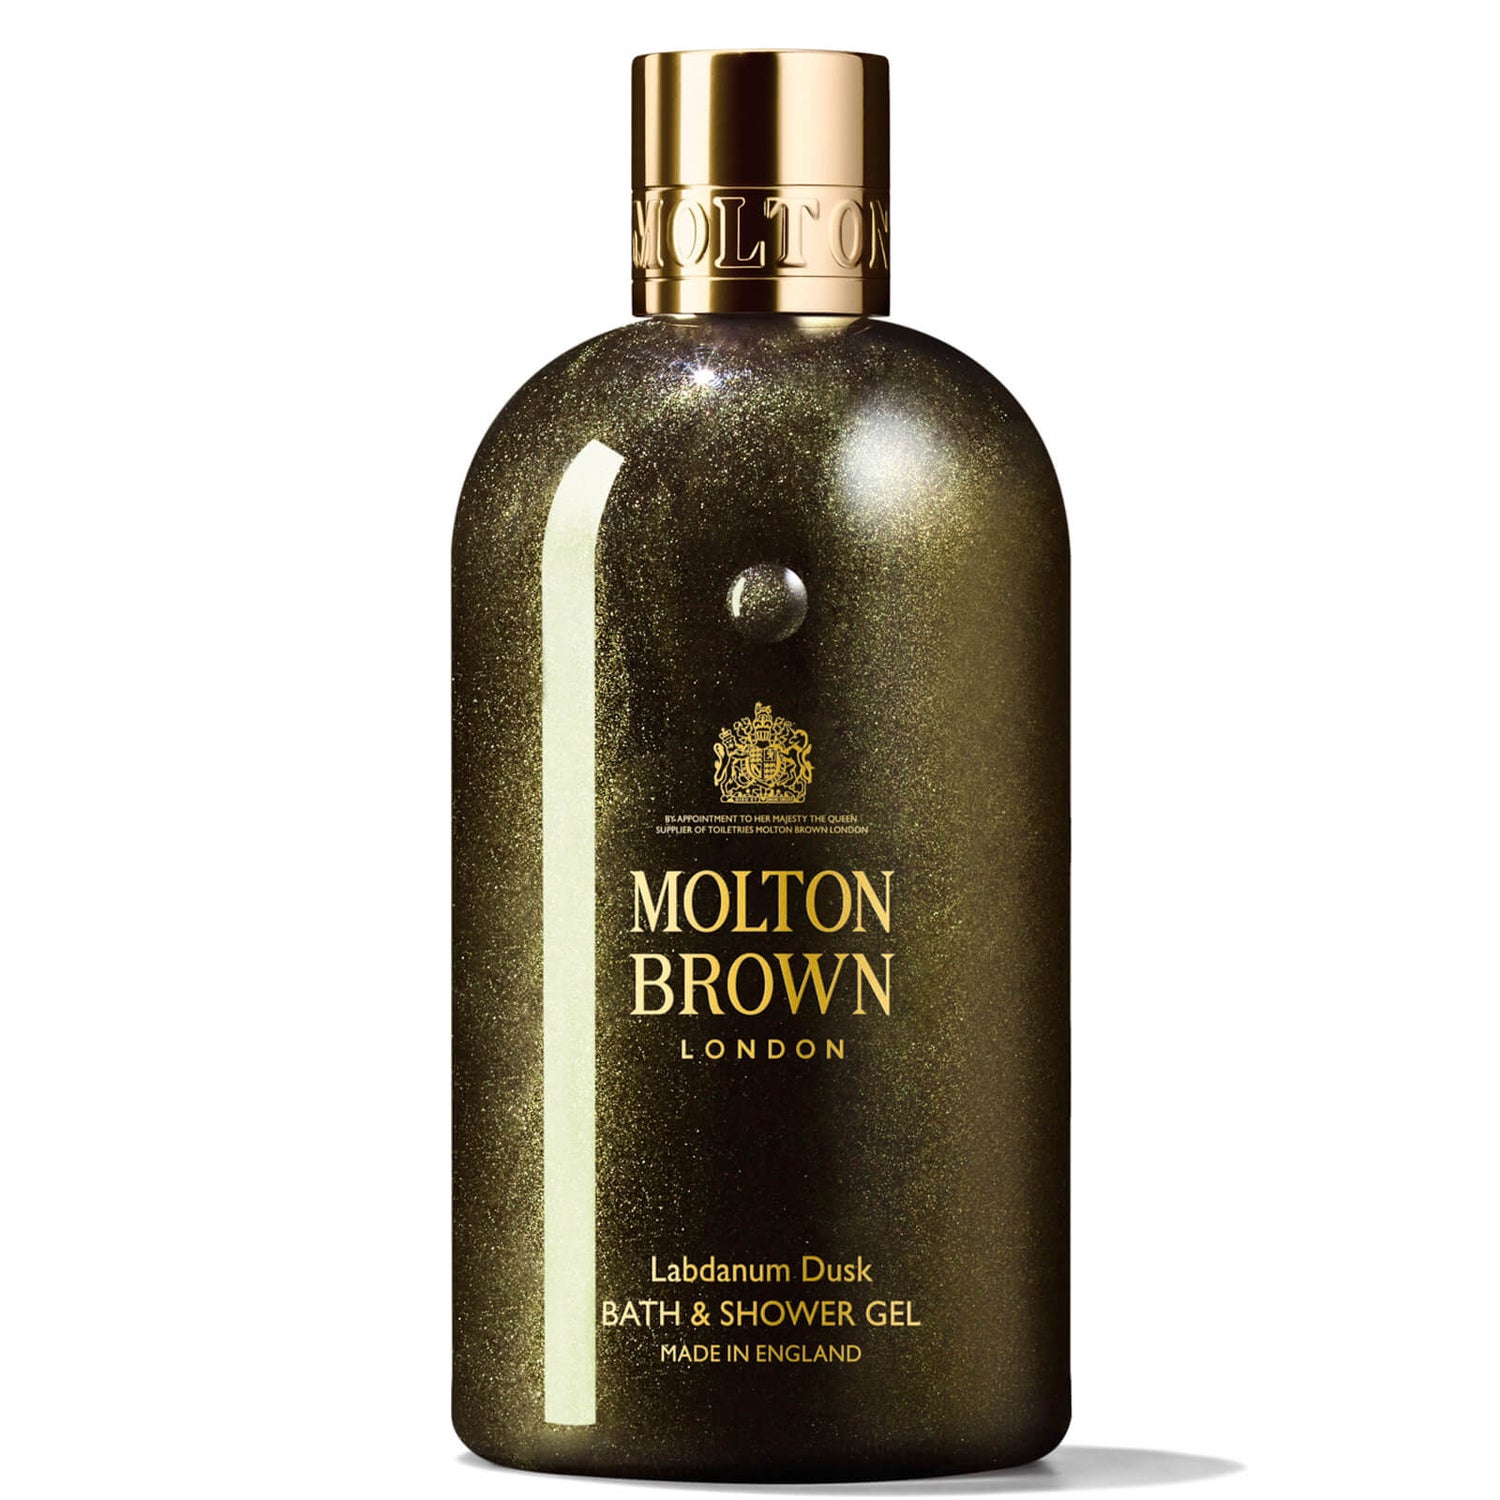 Molton Brown Labdanum Dusk Bath and Shower Gel 300ml